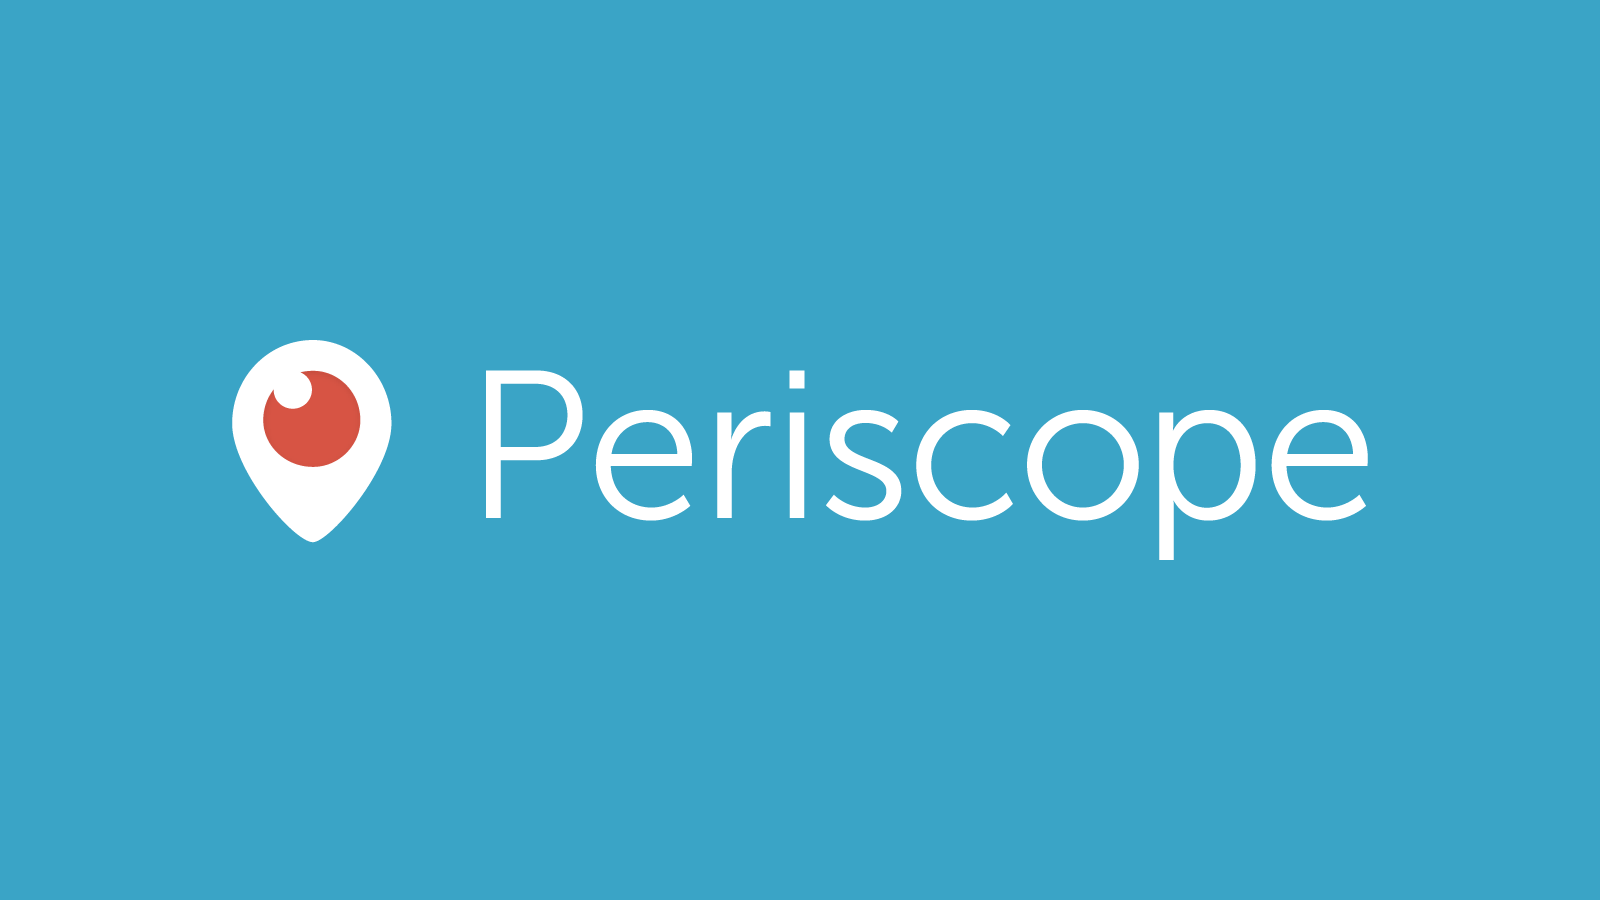 periscope marketing campaign